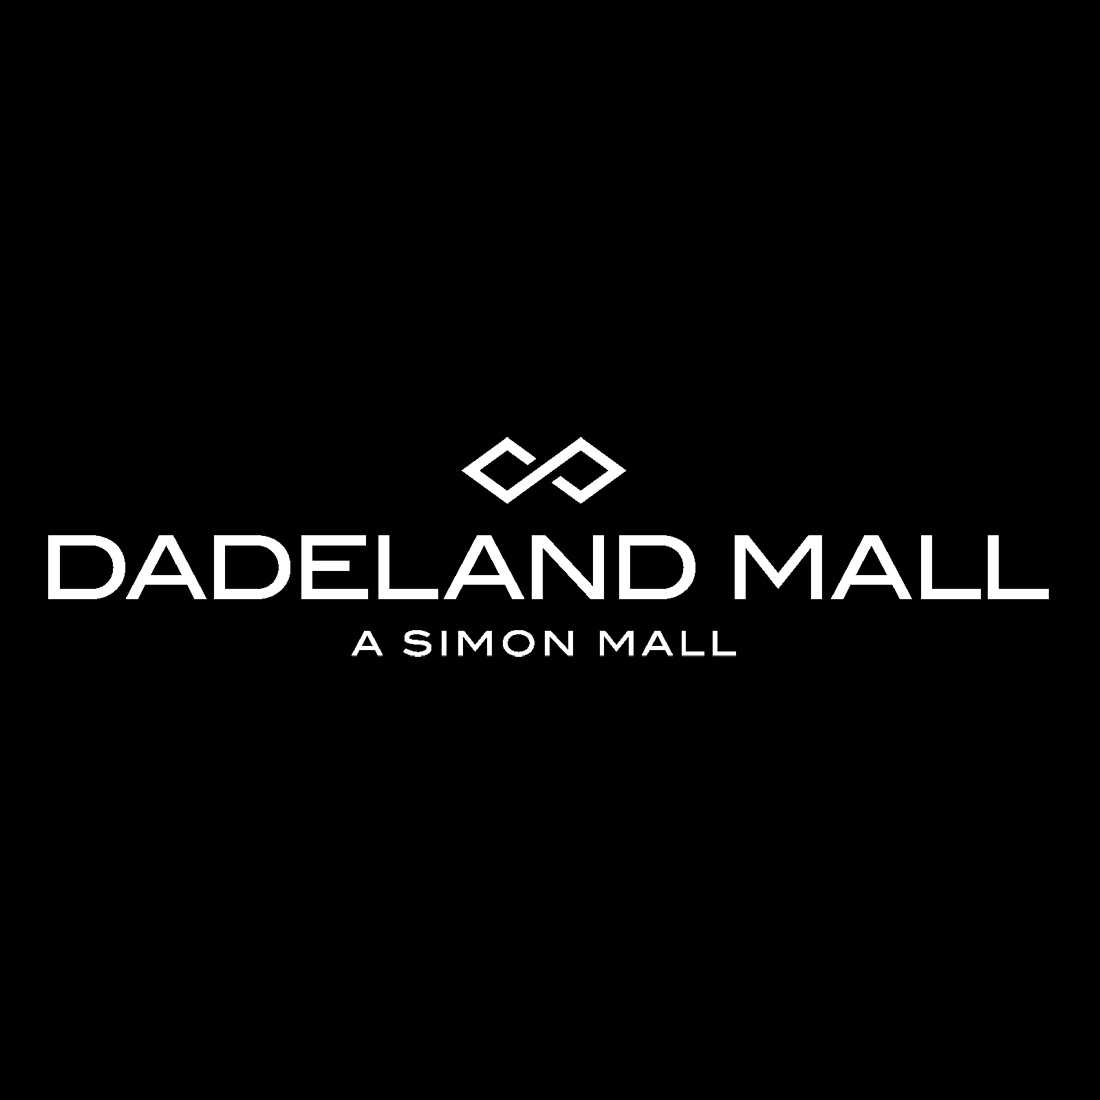 Louis Vuitton Miami Saks Dadeland, 7687 N Kendall Dr, Dadeland Mall, Miami,  FL, Shoe Stores - MapQuest